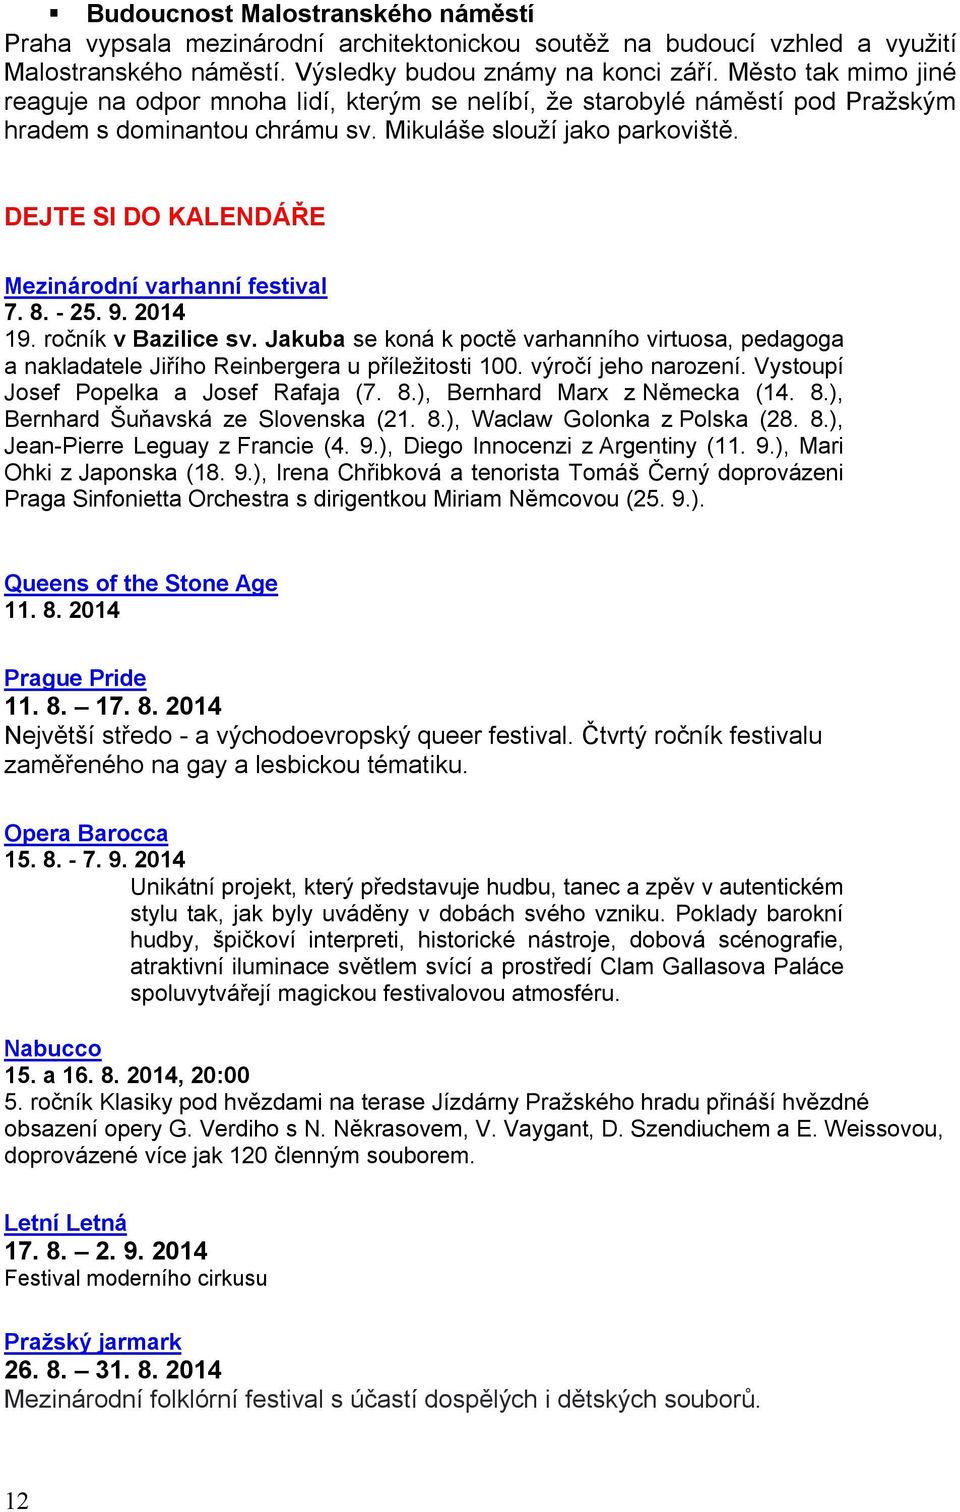 DEJTE SI DO KALENDÁŘE Mezinárodní varhanní festival 7. 8. - 25. 9. 2014 19. ročník v Bazilice sv.